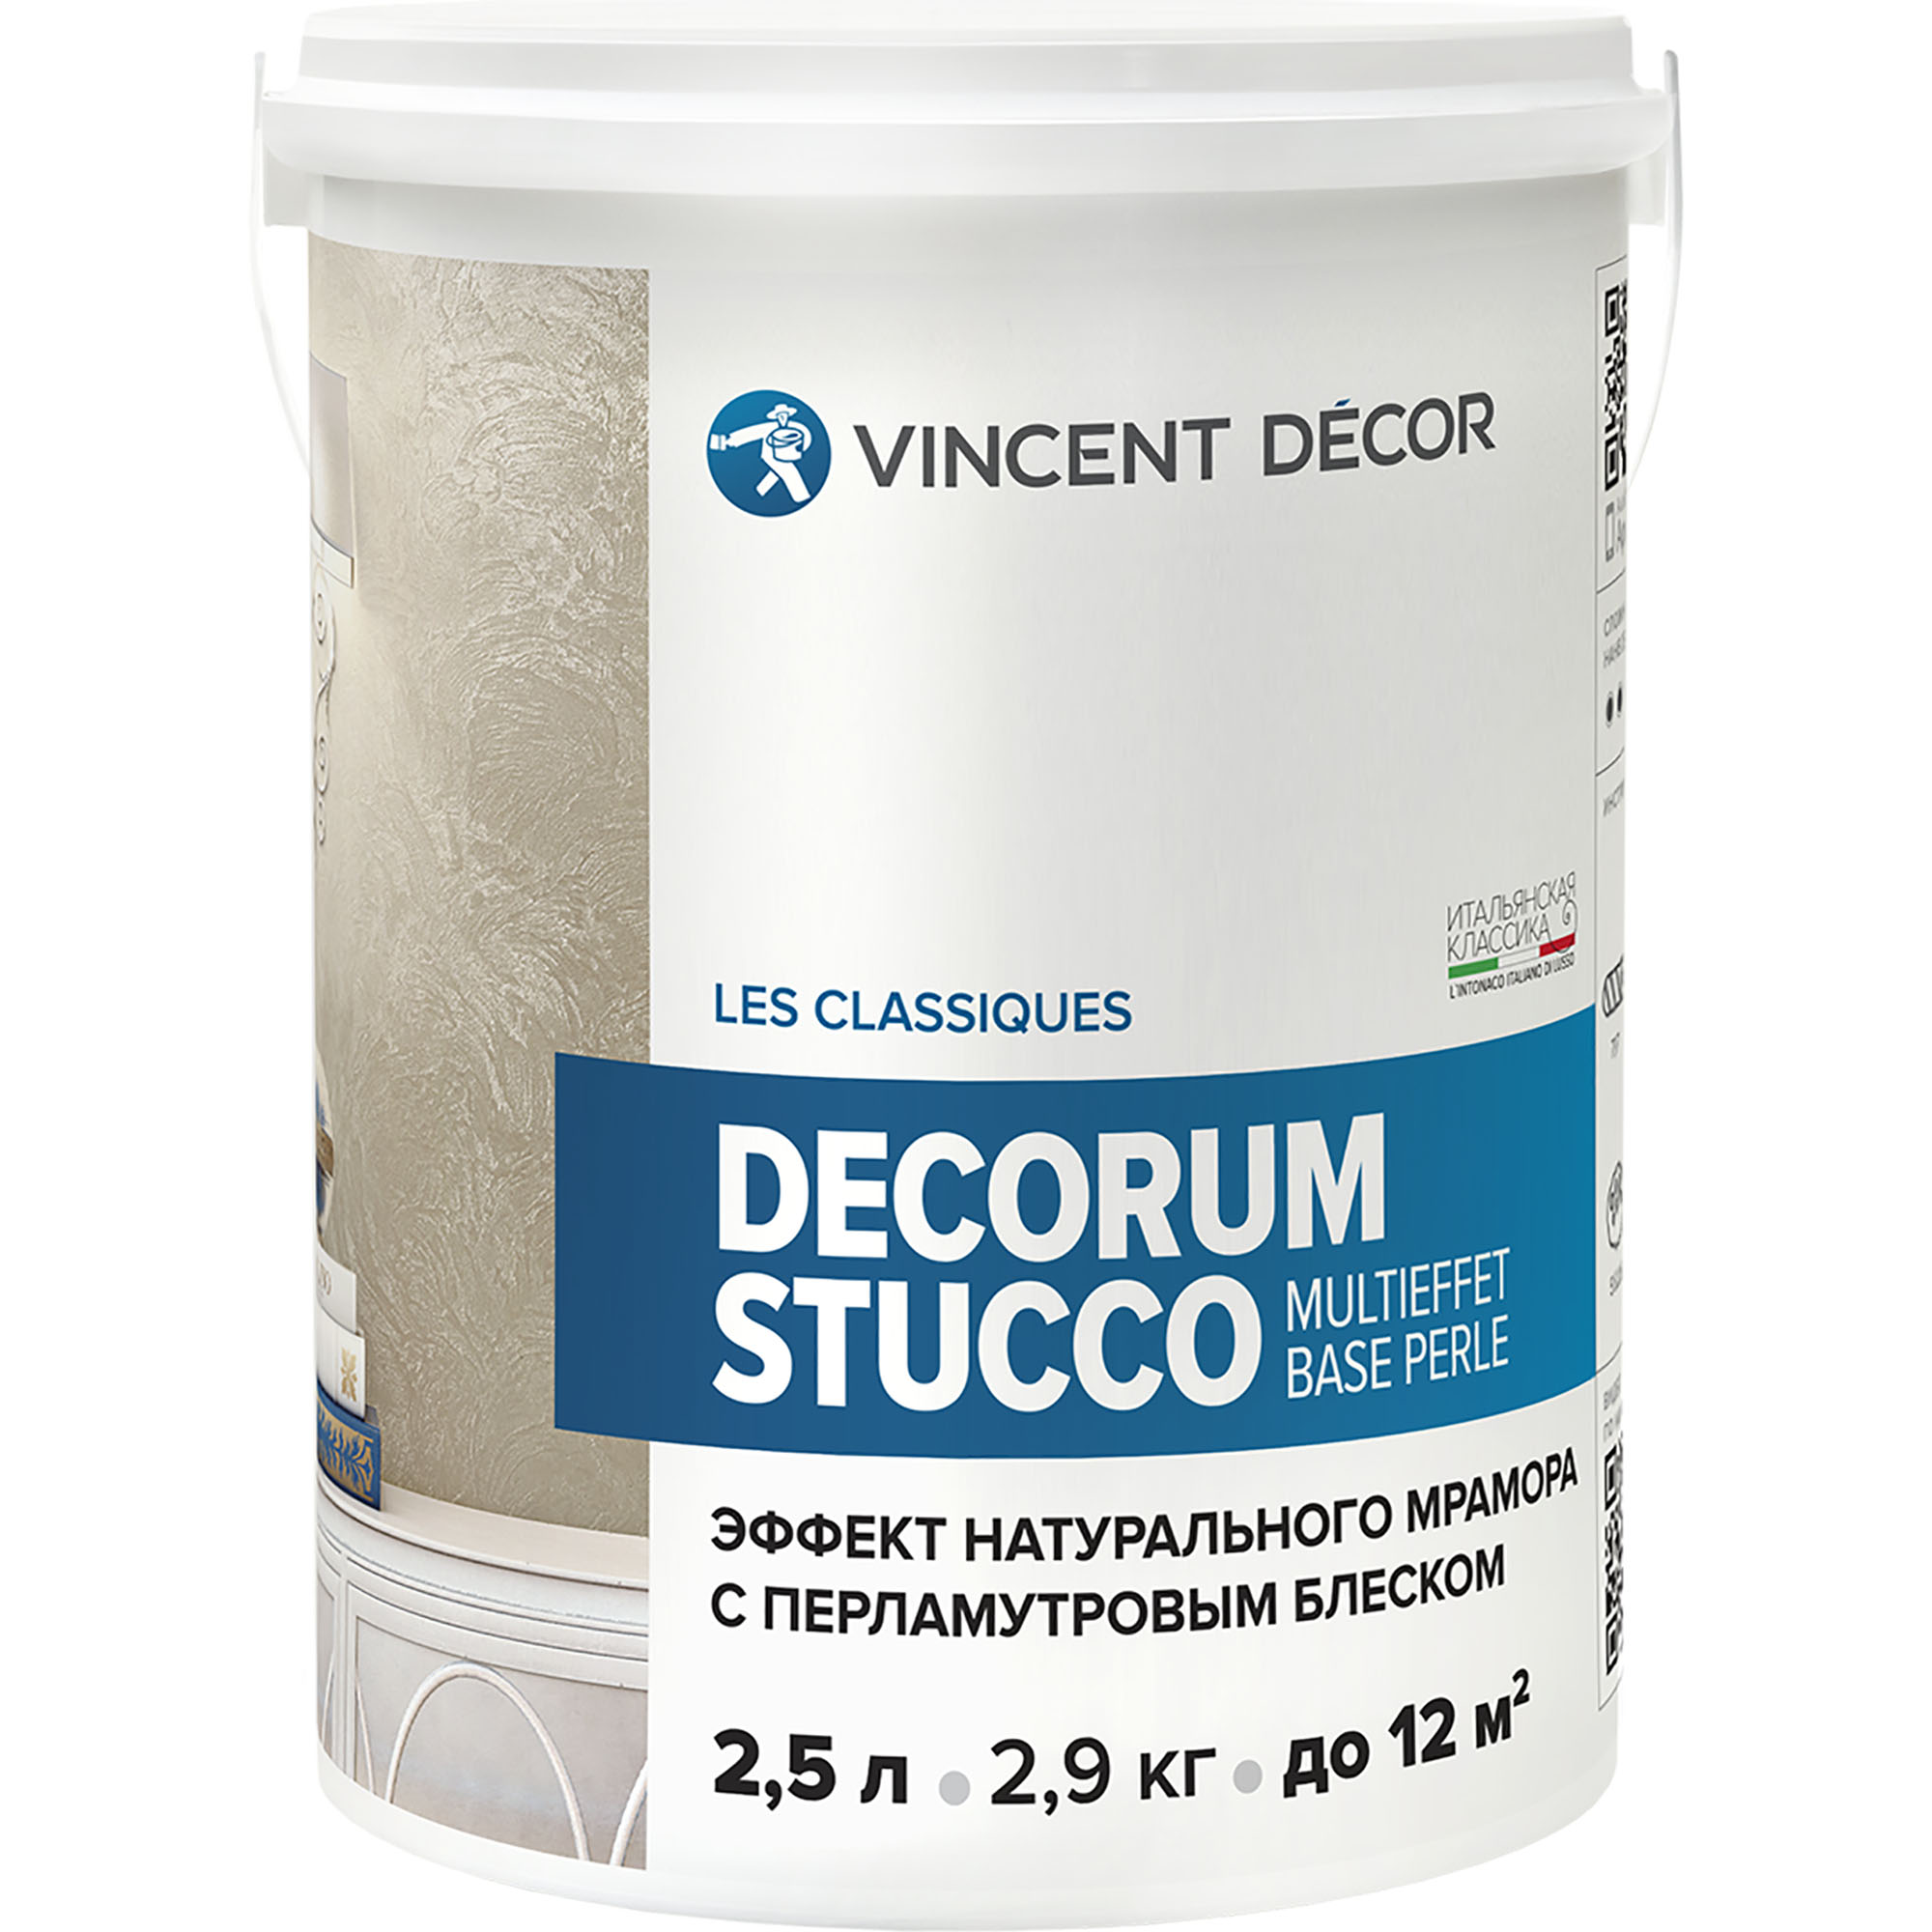 Декоративное покрытие для стен Vincent Decor Decorum Stucco Multieffet base Perle c эффектом натурального мрамора с перламутровым блеском 2,5 л